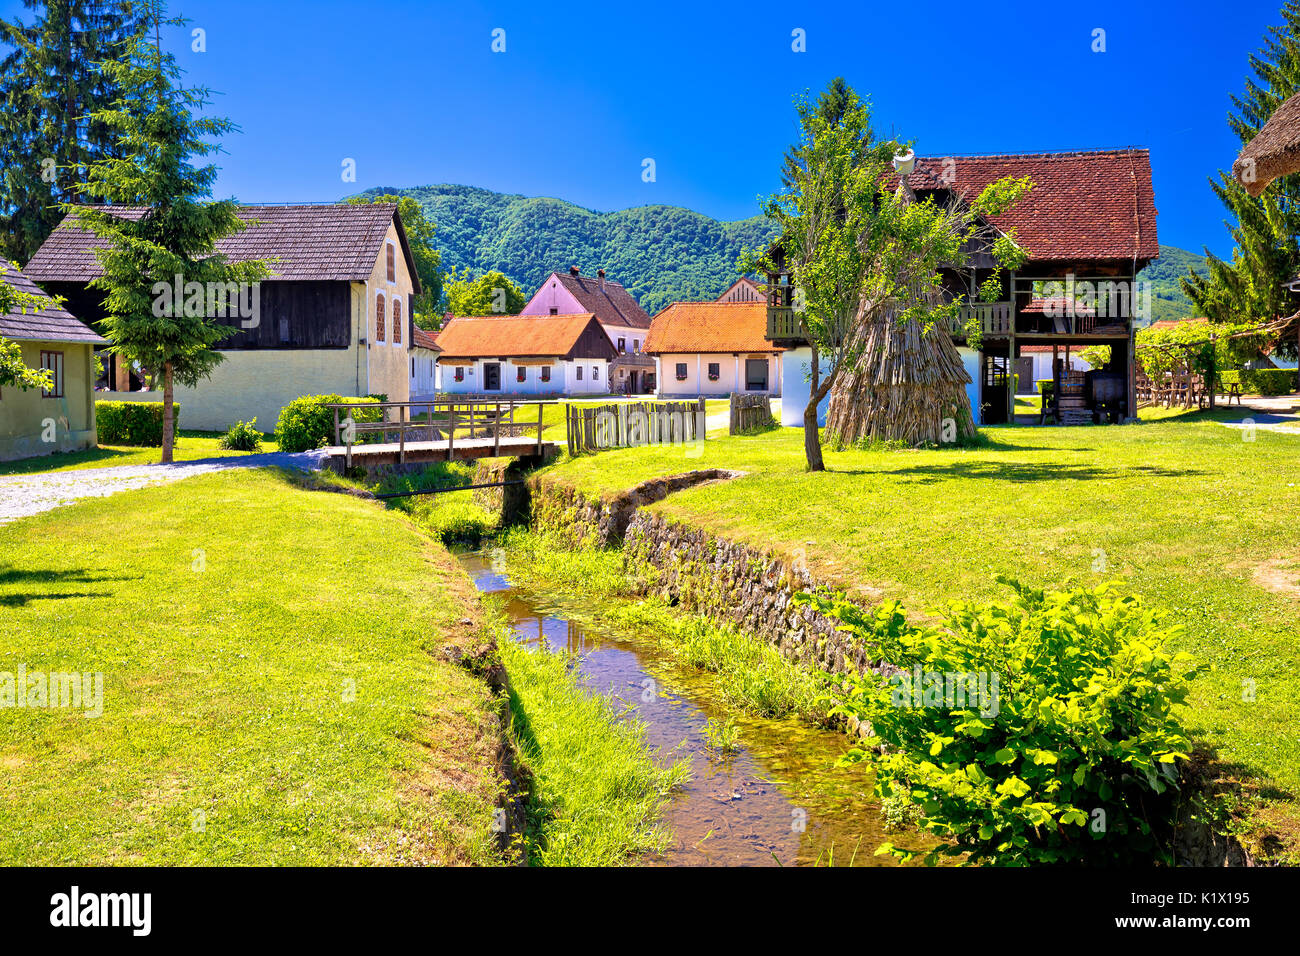 Kumrovec malerischen Dorf in der Region Zagorje Kroatien, dem Geburtsort von Josip Broz Tito, der ehemalige Führer von Jugoslawien Stockfoto